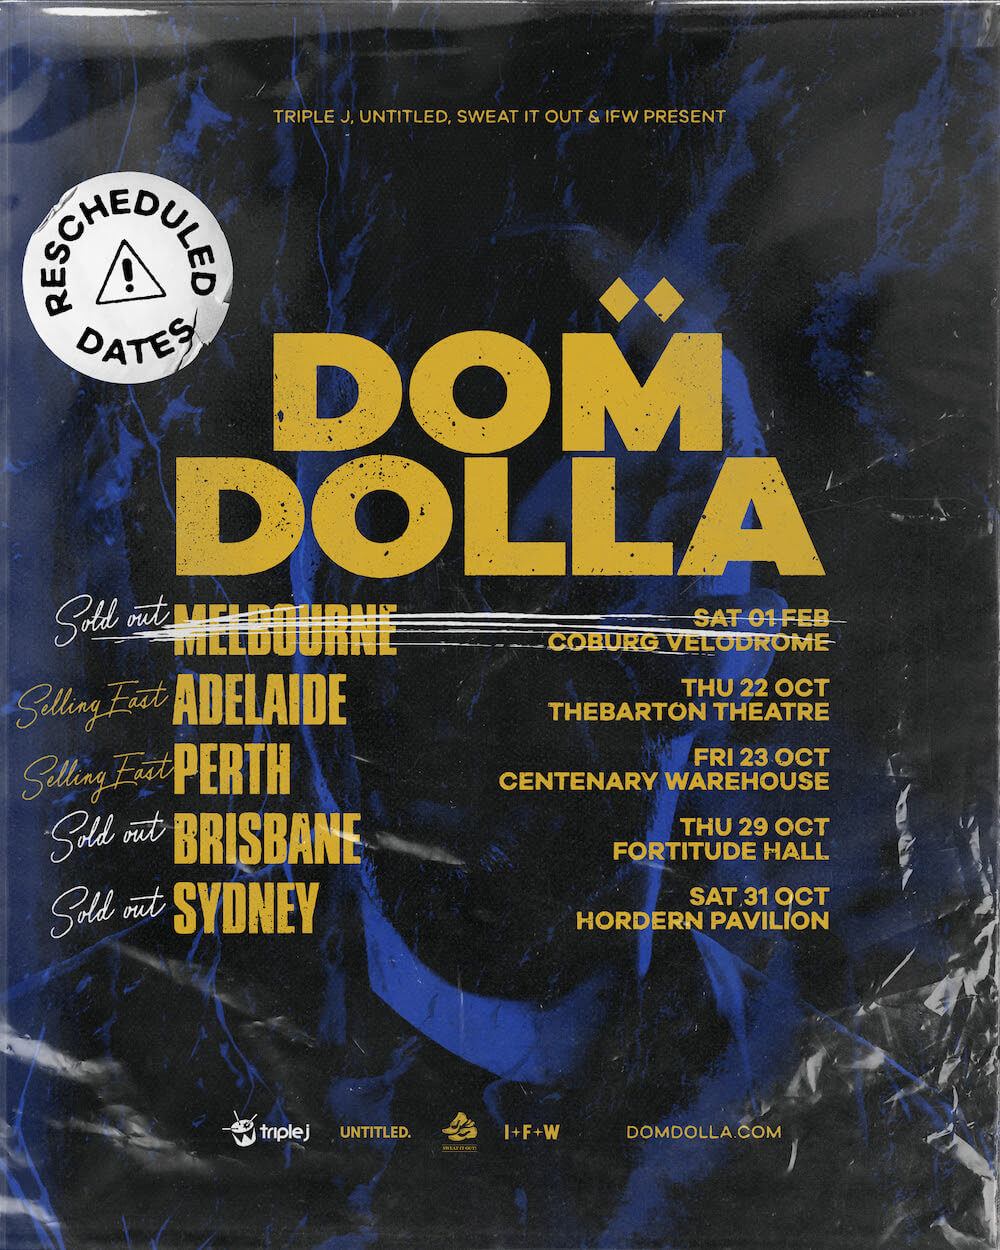 dom-dolla-revised-australian-tour-dates-2020-oz-edm